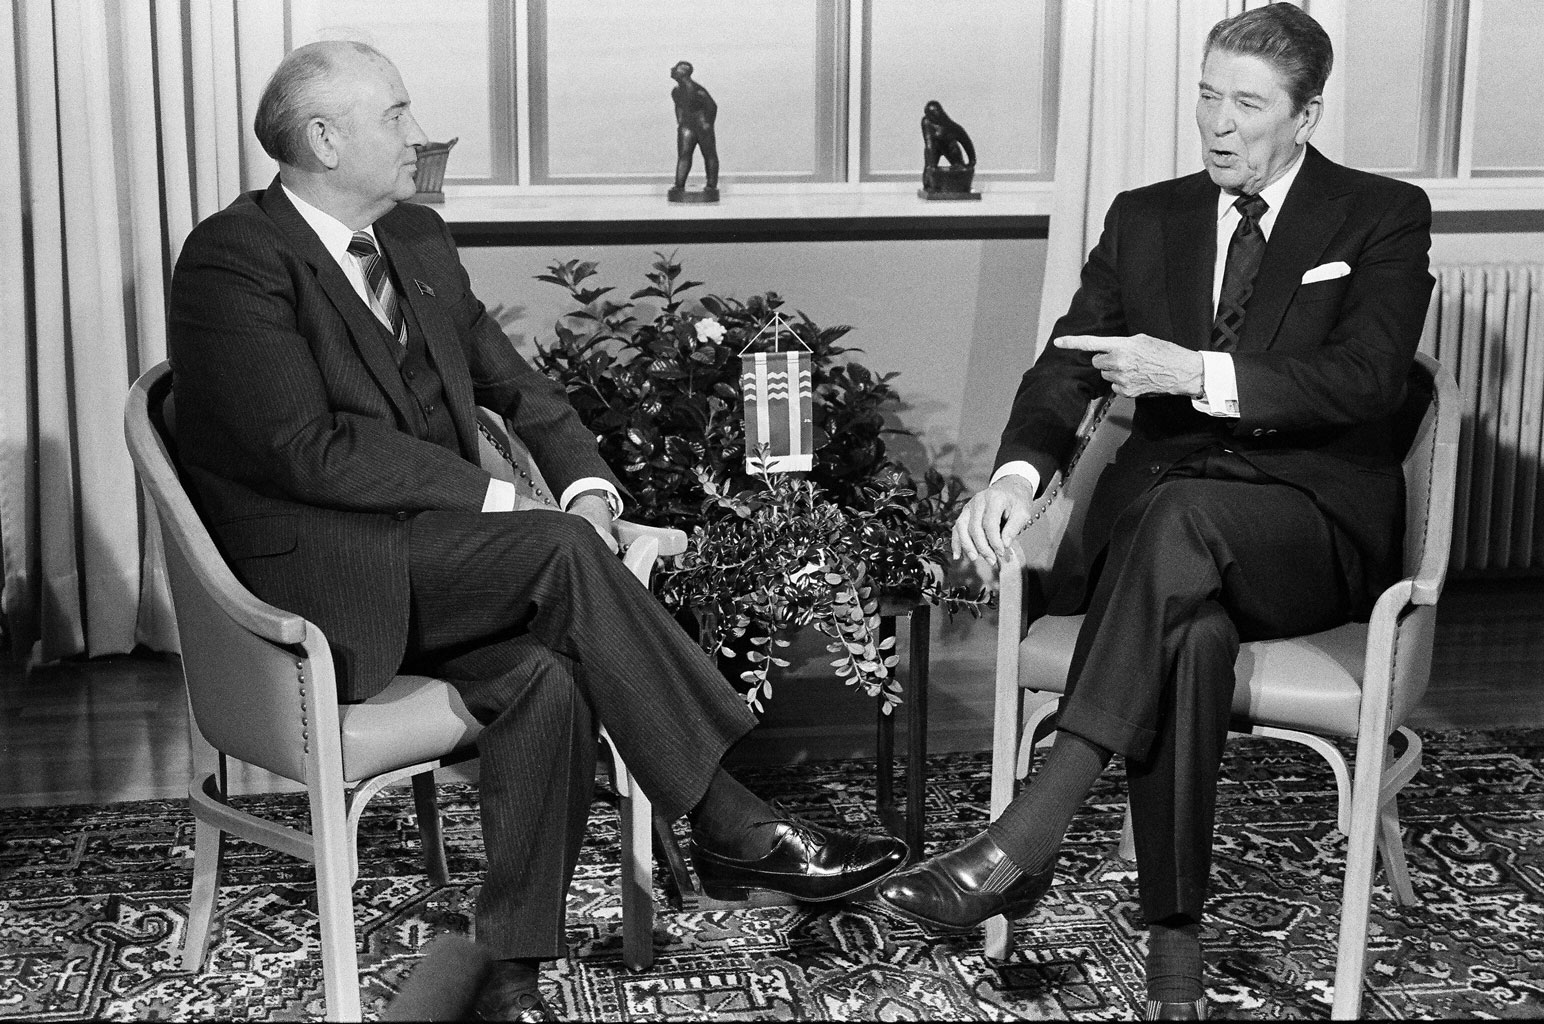 الرئيس الأميركي السابق رونالد ريغان والزعيم السوفييتي السابق ميخائيل غورباتشوف